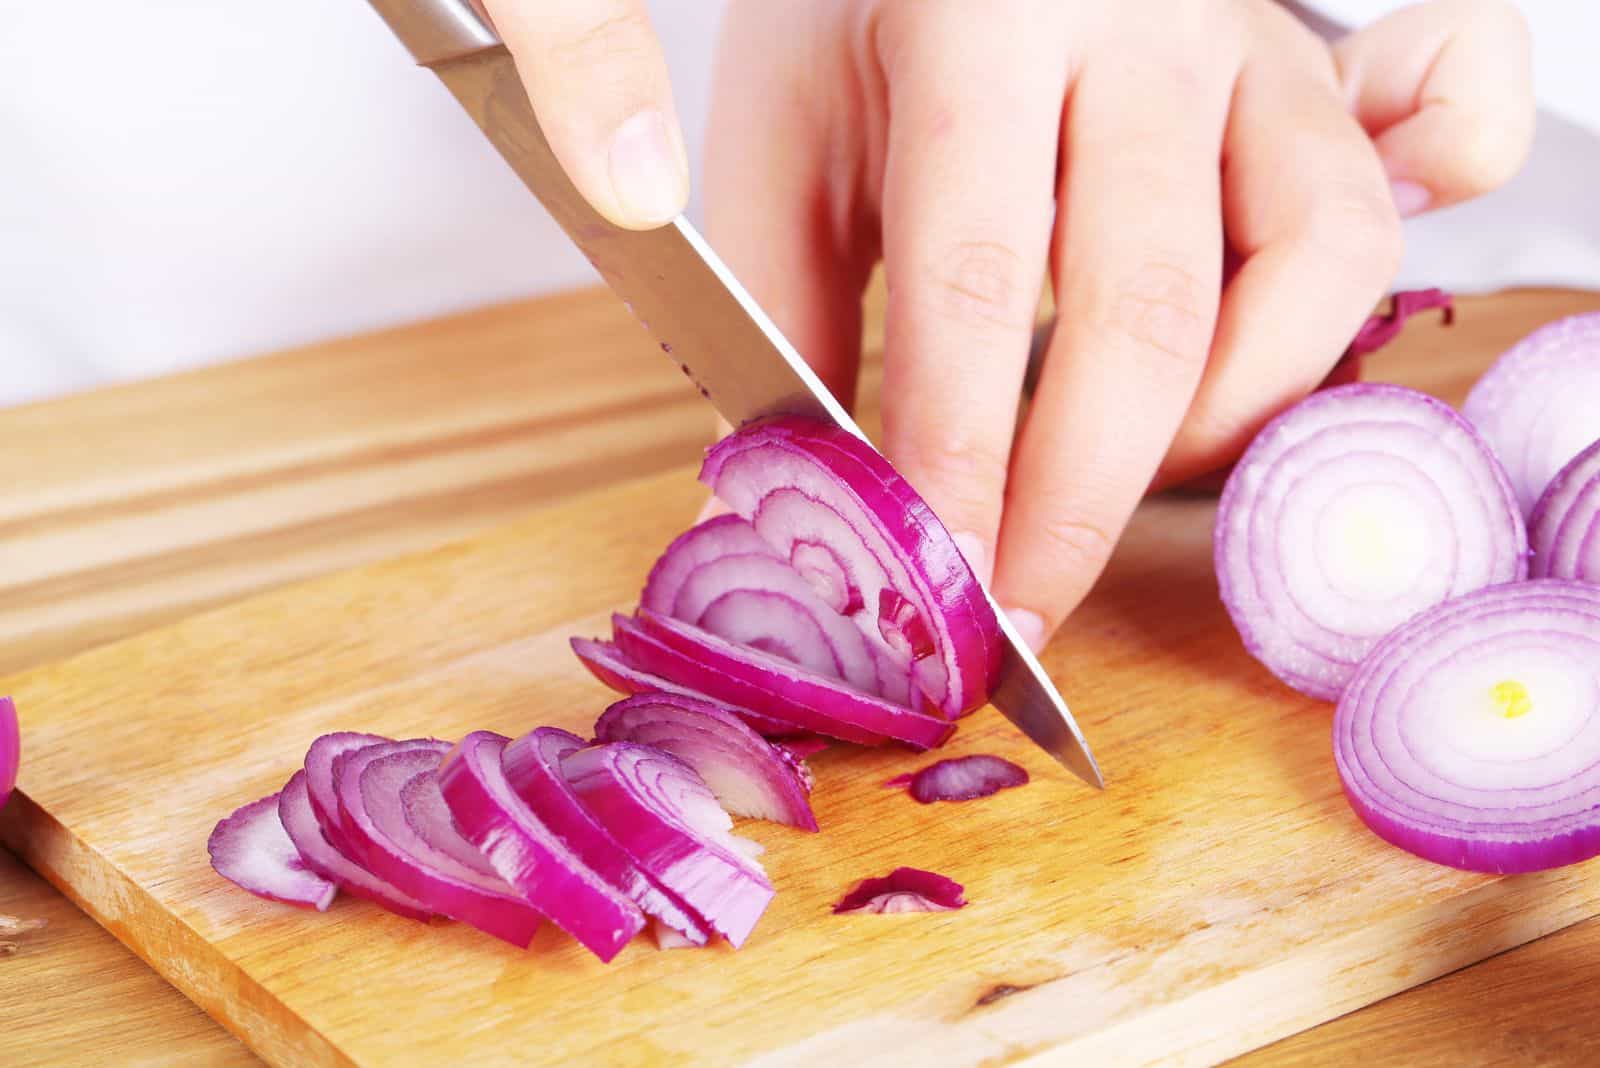 a woman cuts an onion